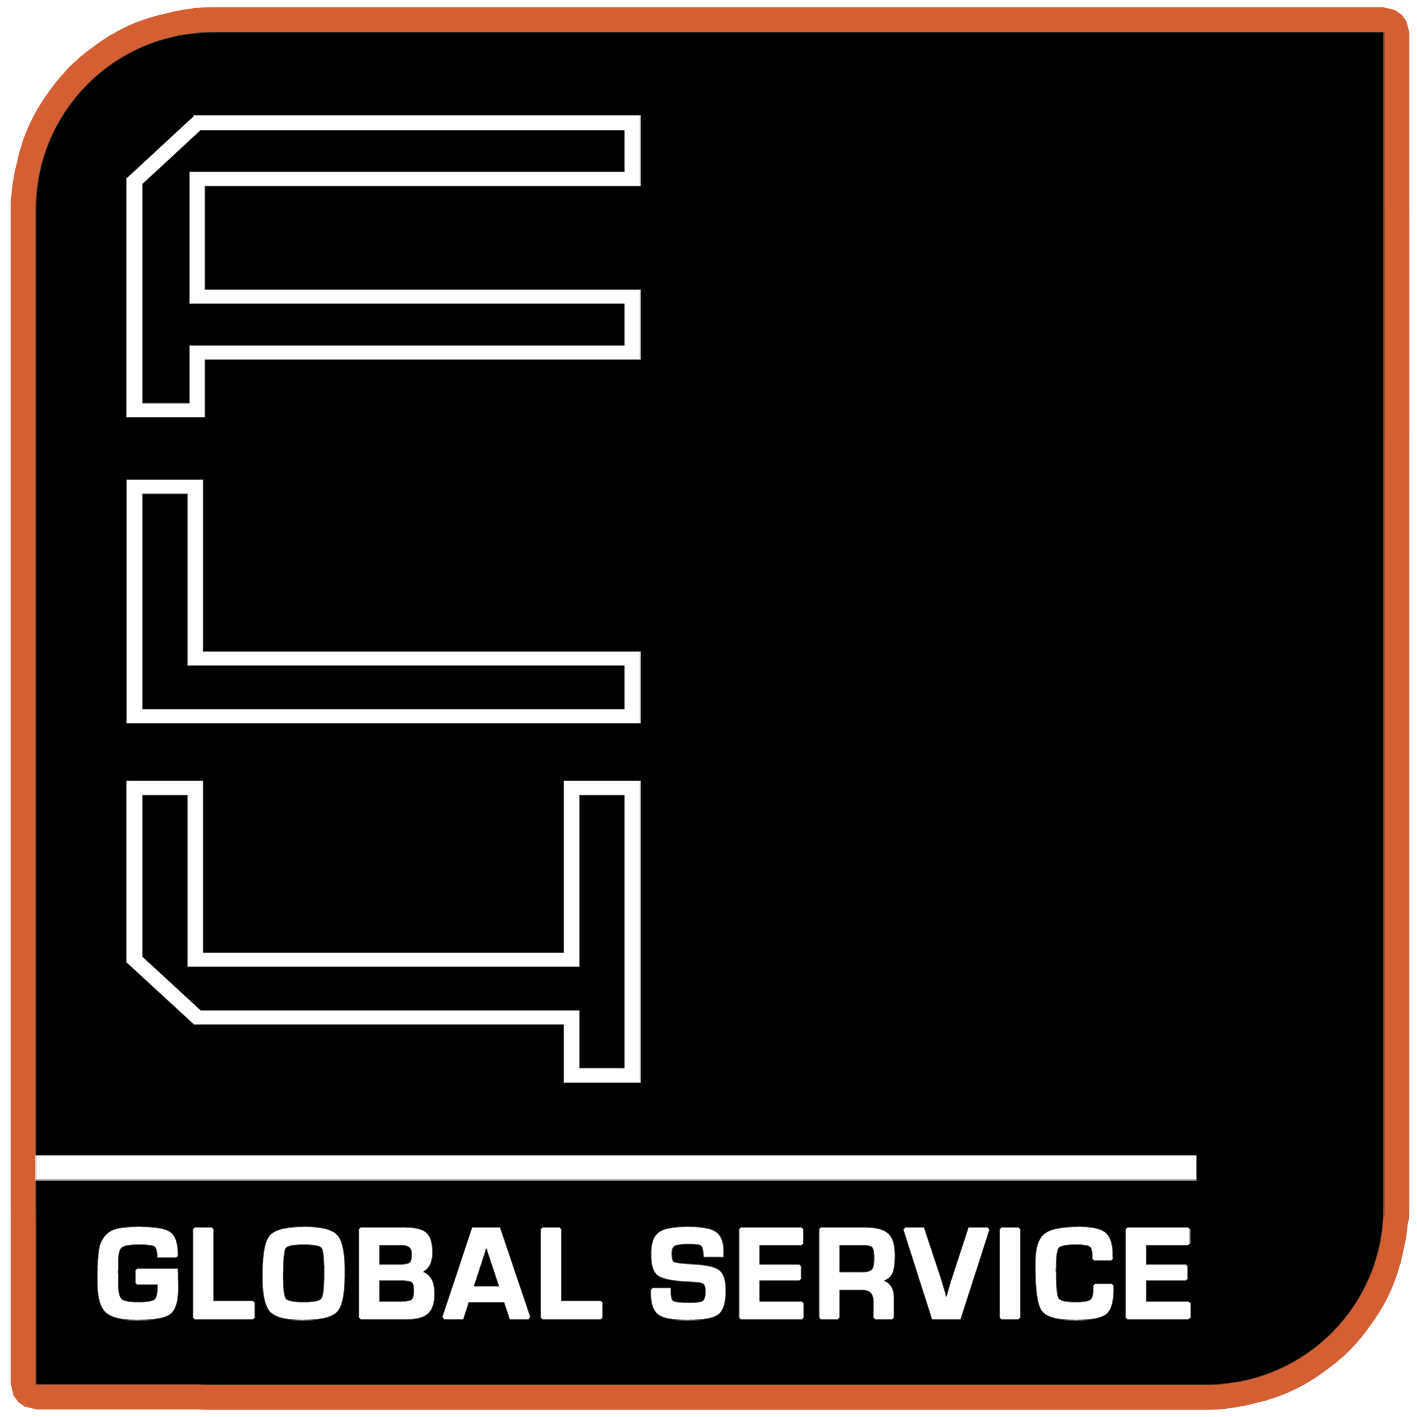 PATCH-LOGO-FLY-GLOBAL-SERVICE